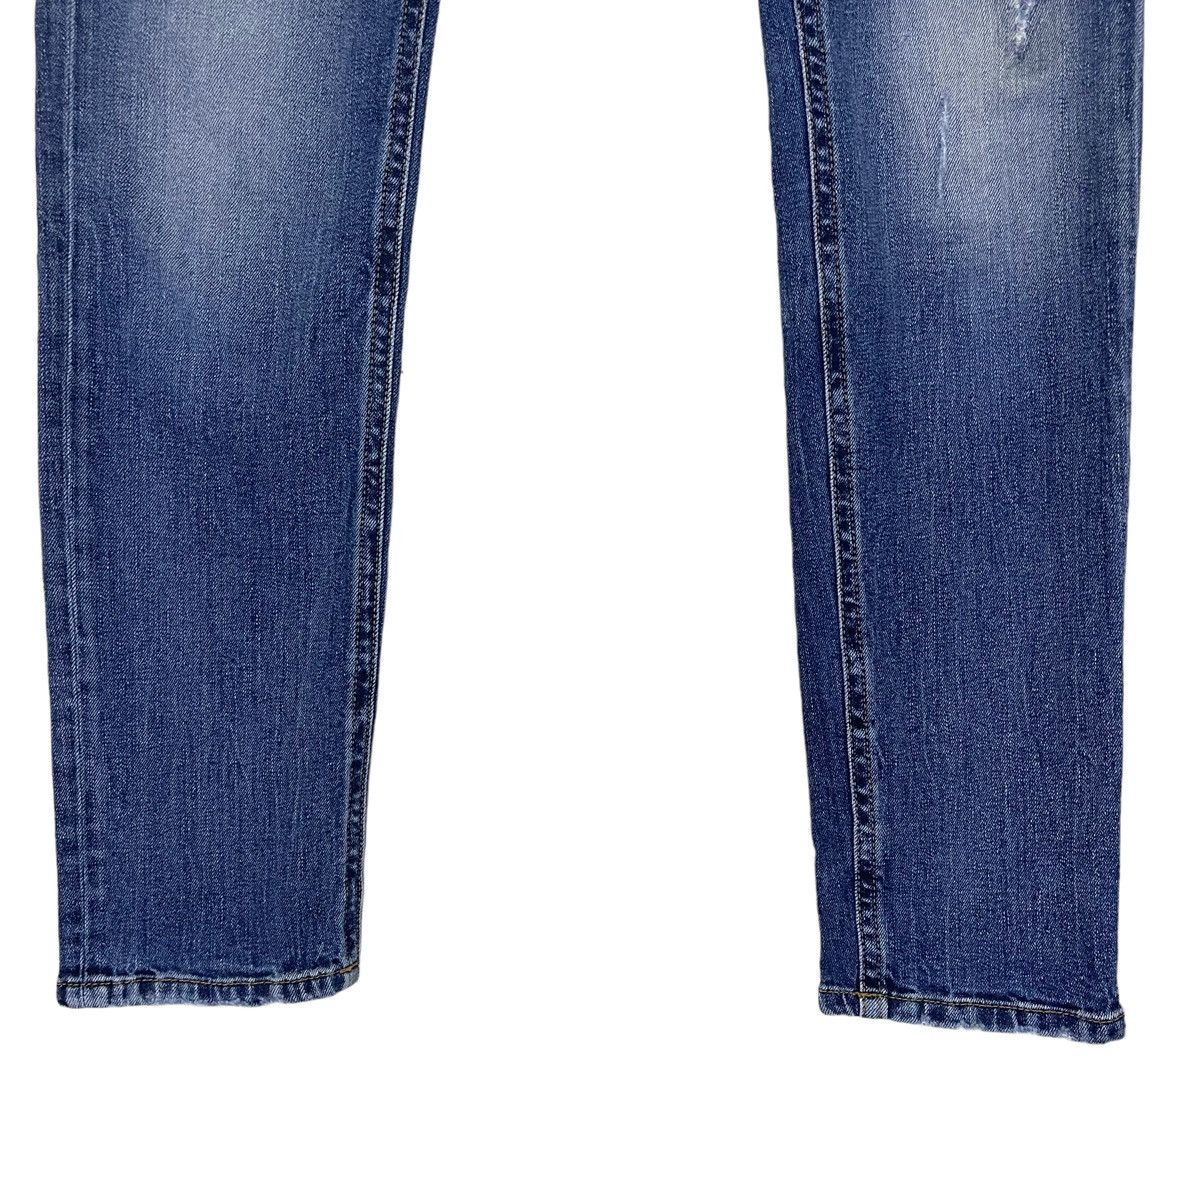 Diesel Industry Thommer Slim Skinny Distressed Jeans - 4